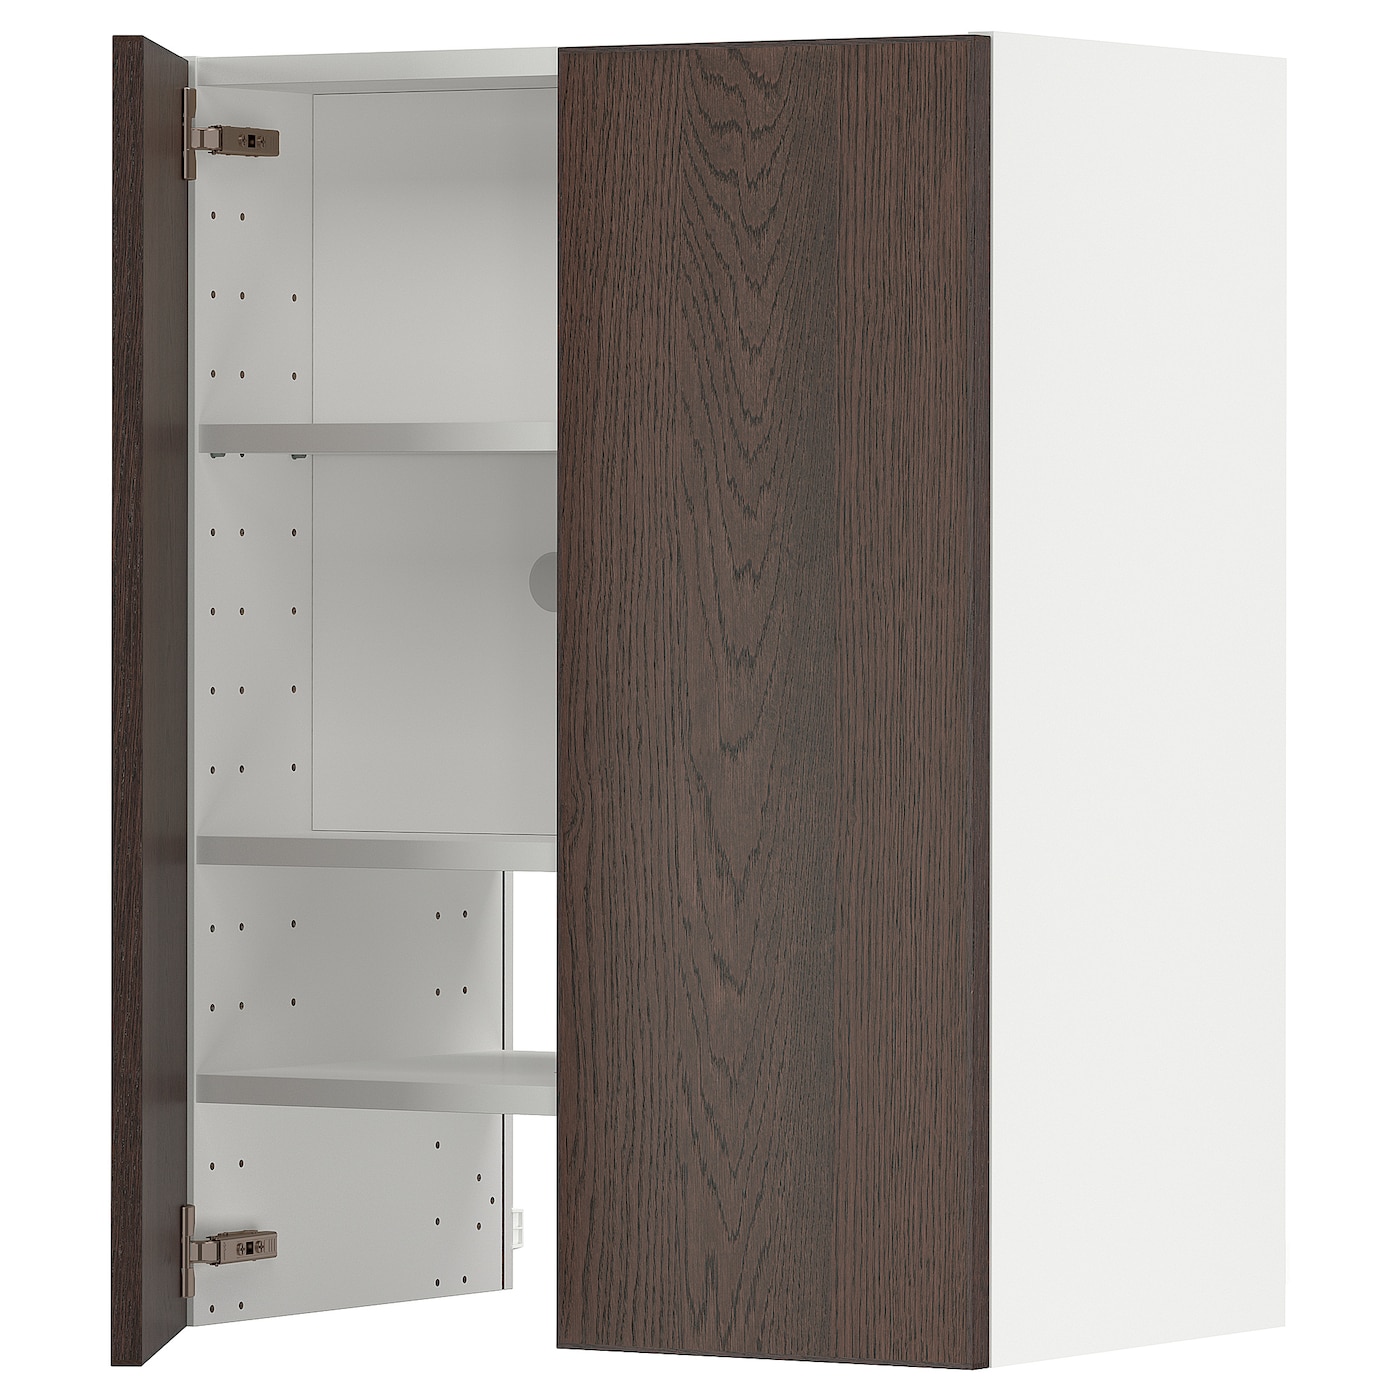 Навесной шкаф с полкой - METOD IKEA/ МЕТОД ИКЕА, 80х60 см, белый/коричневый